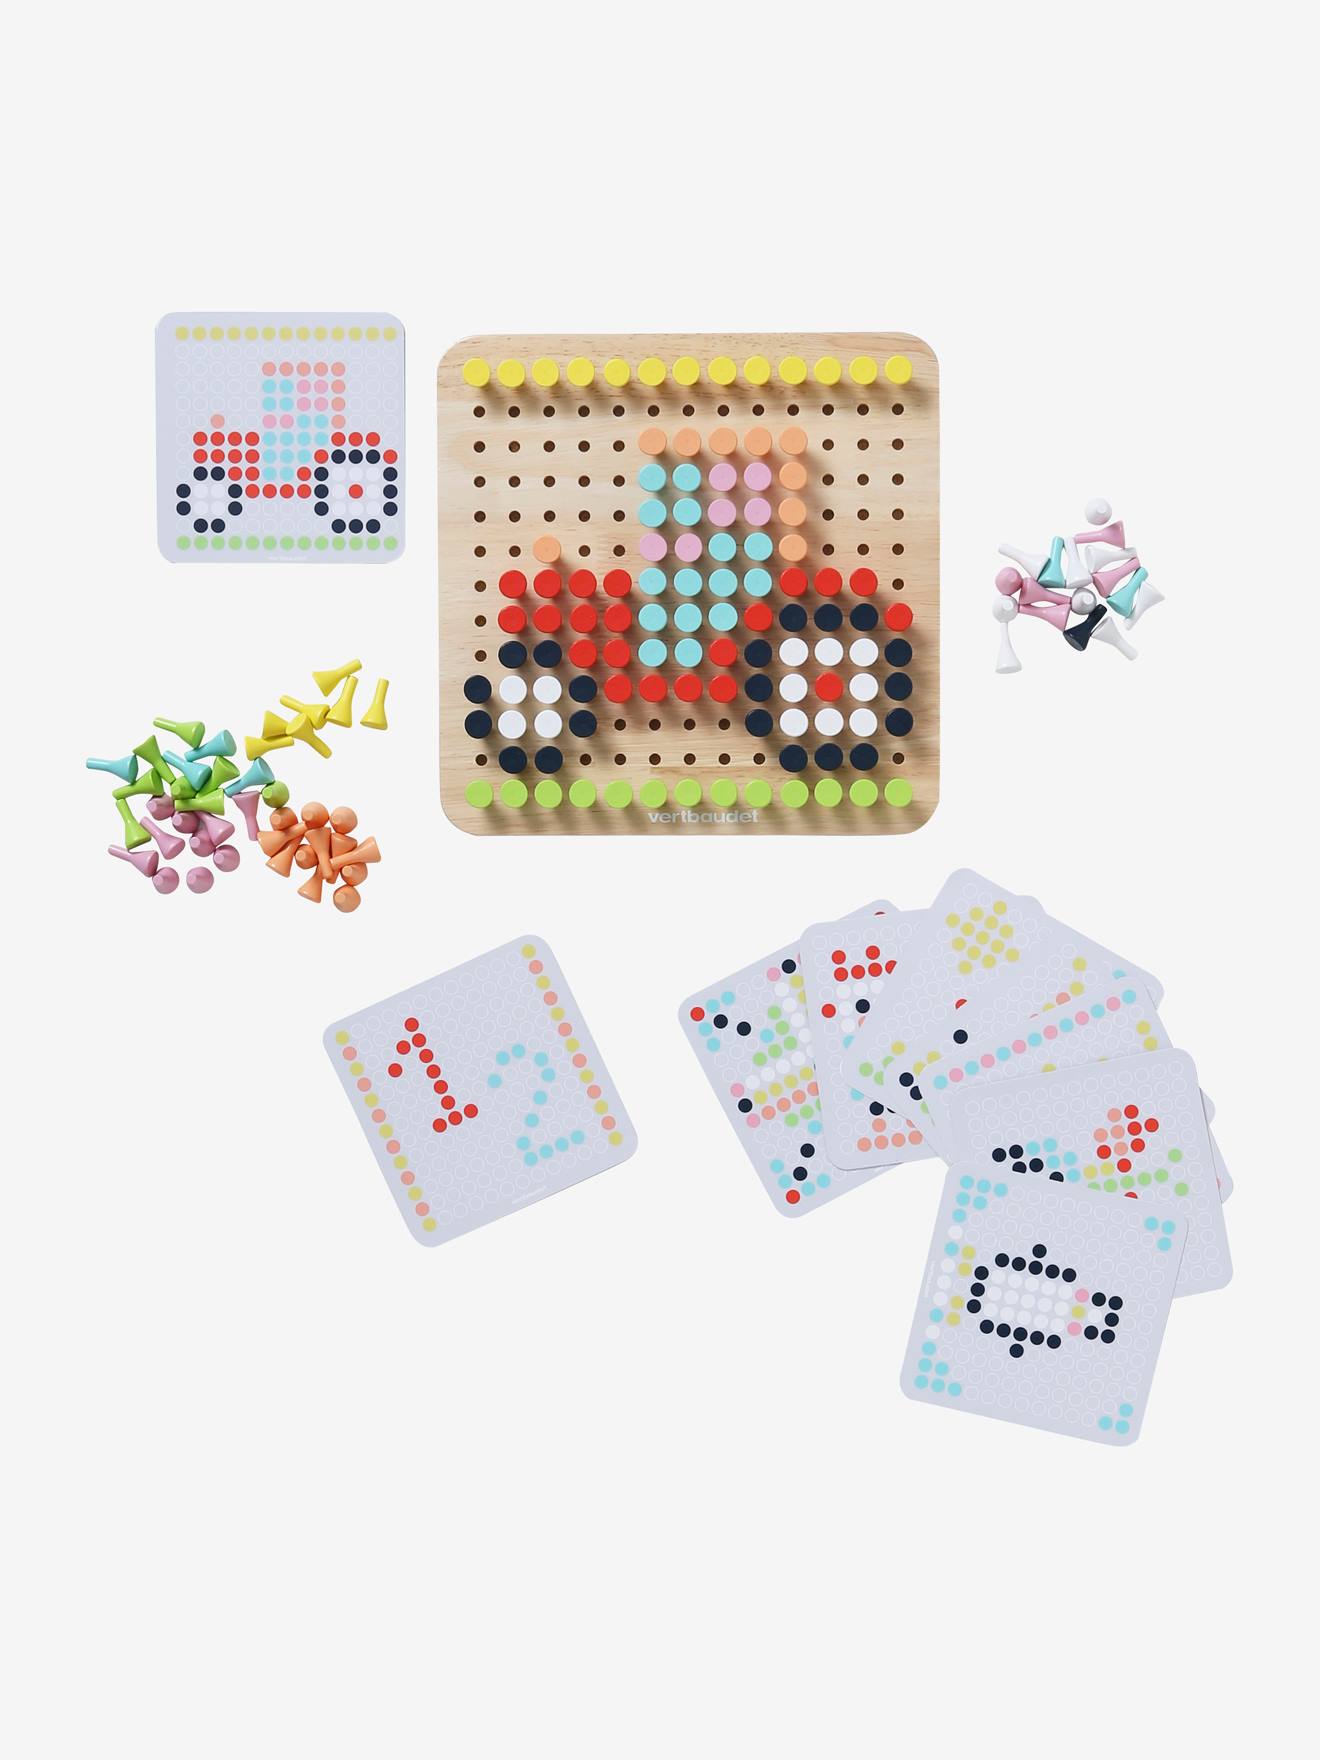 Jeux en mosaïque pour enfants pour créer des objets colorés